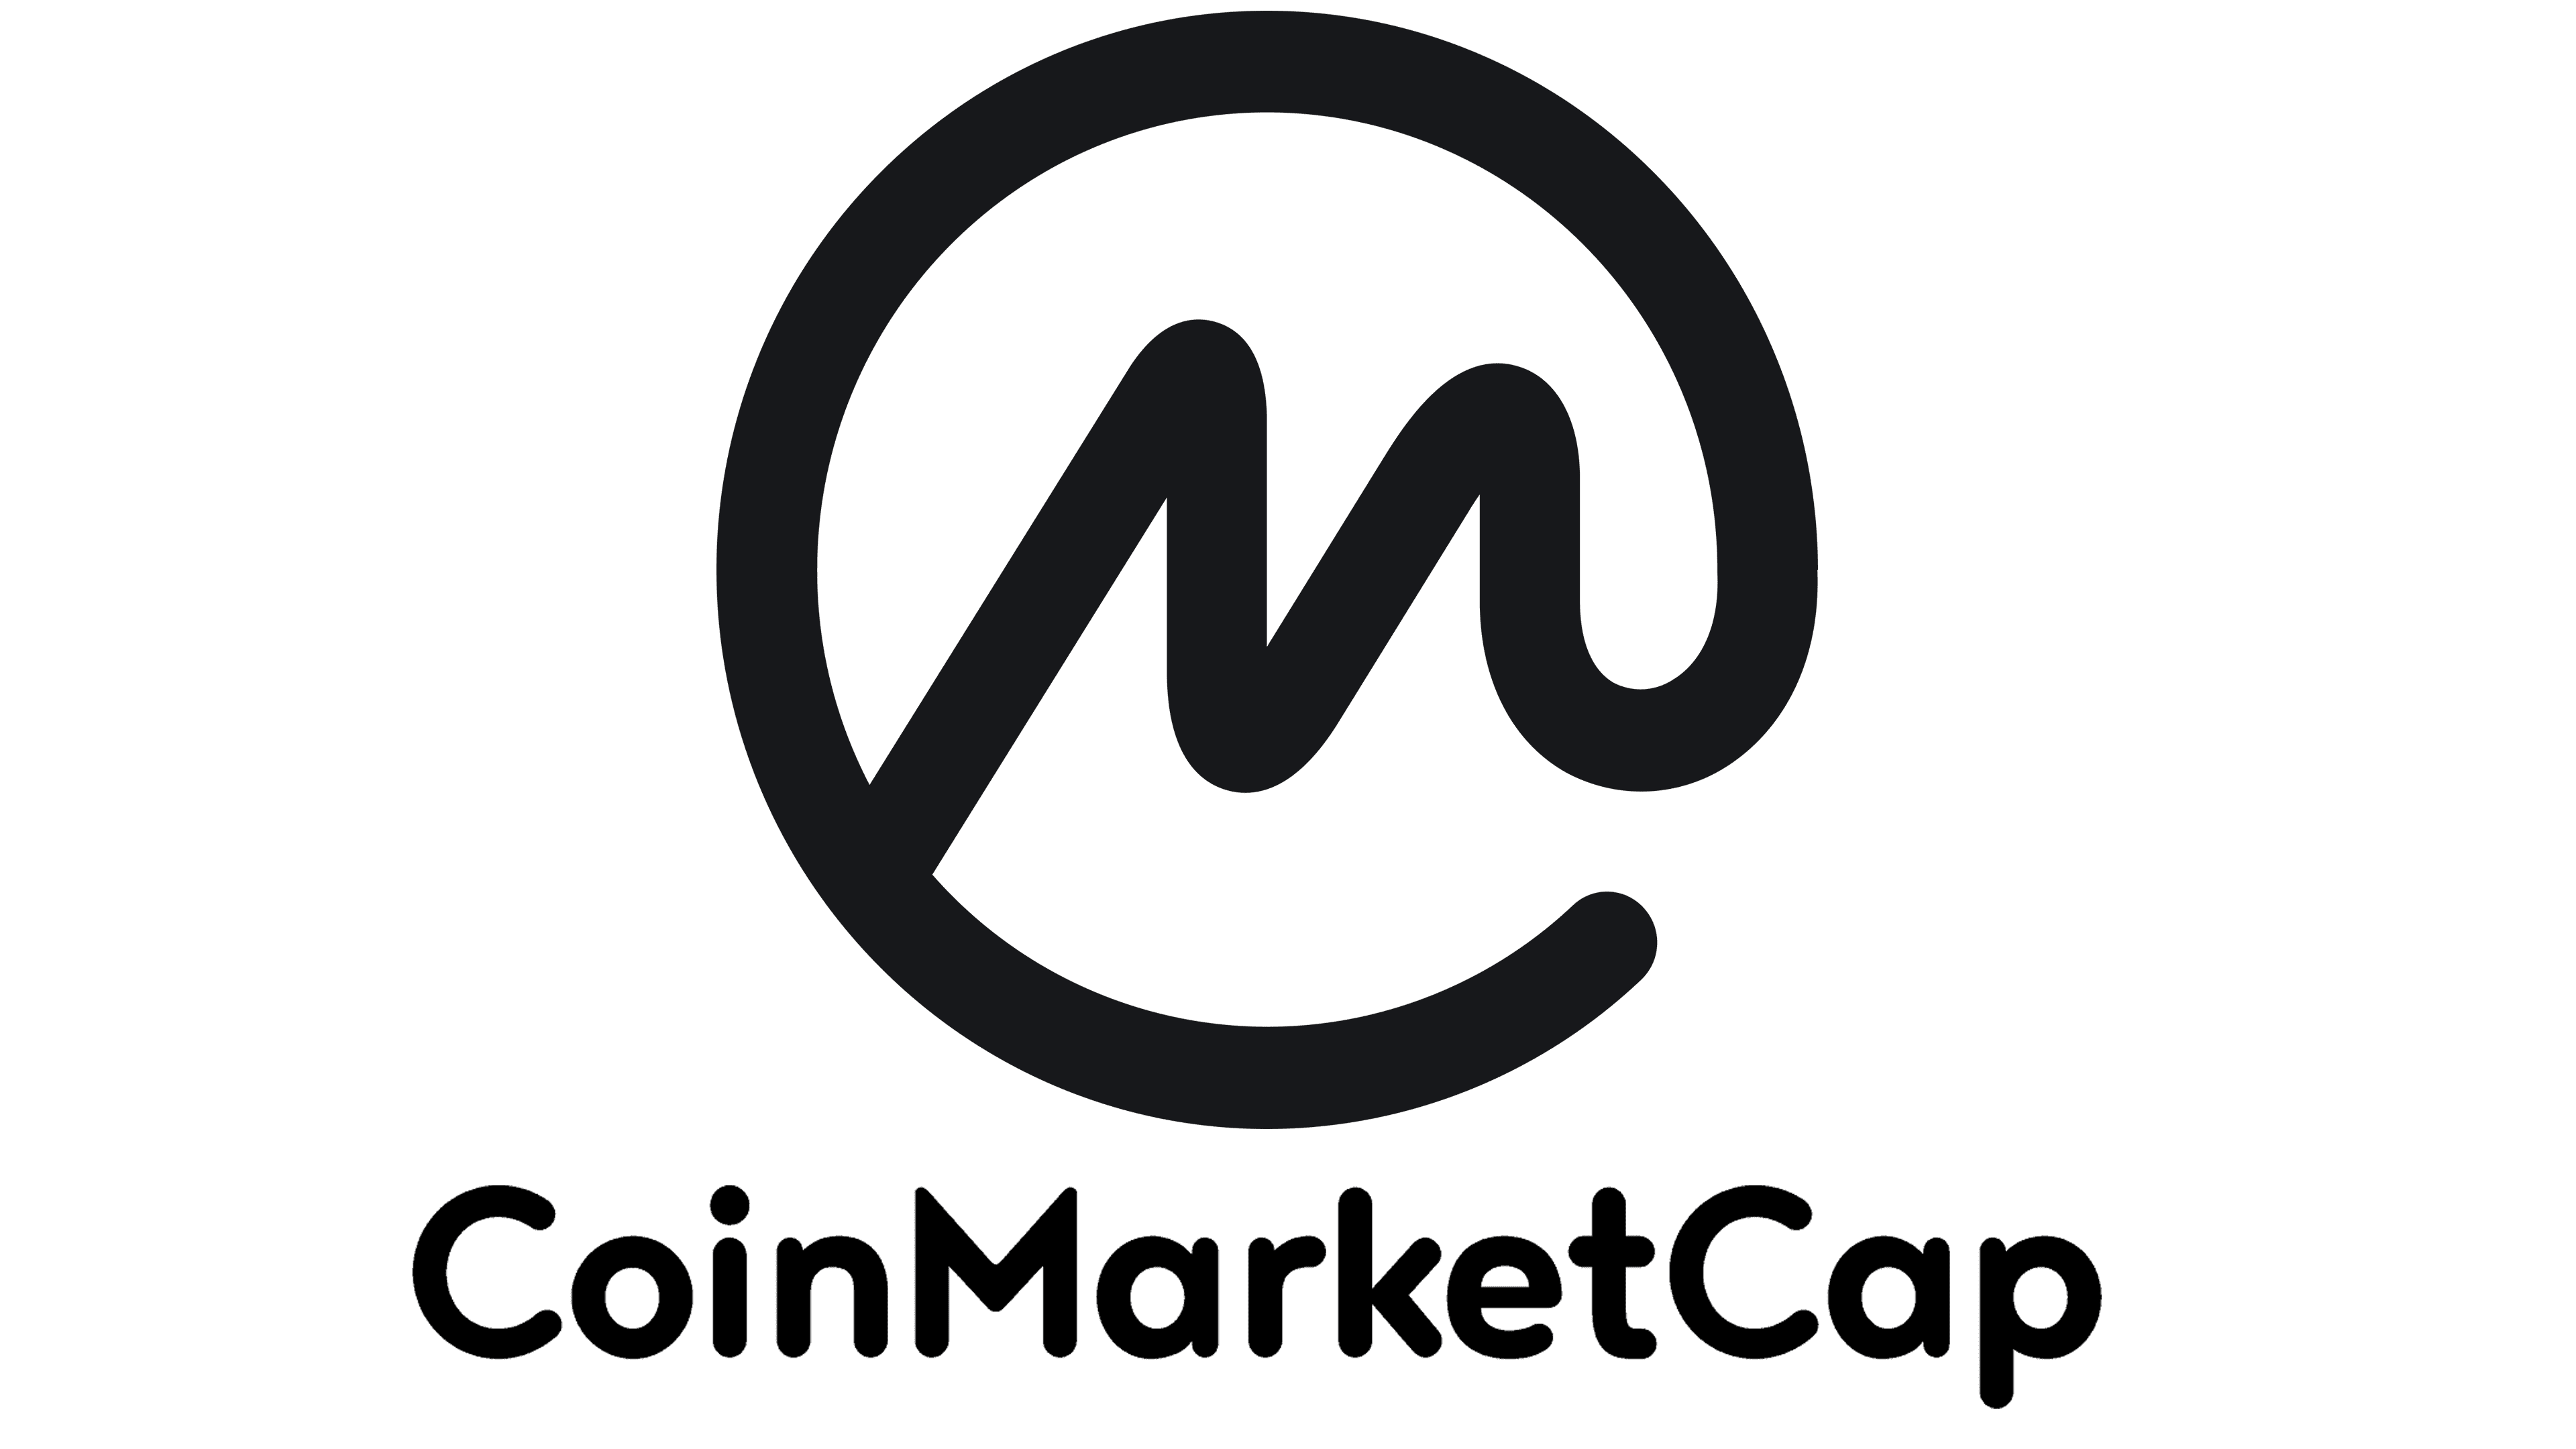 CoinMarketCap logo69